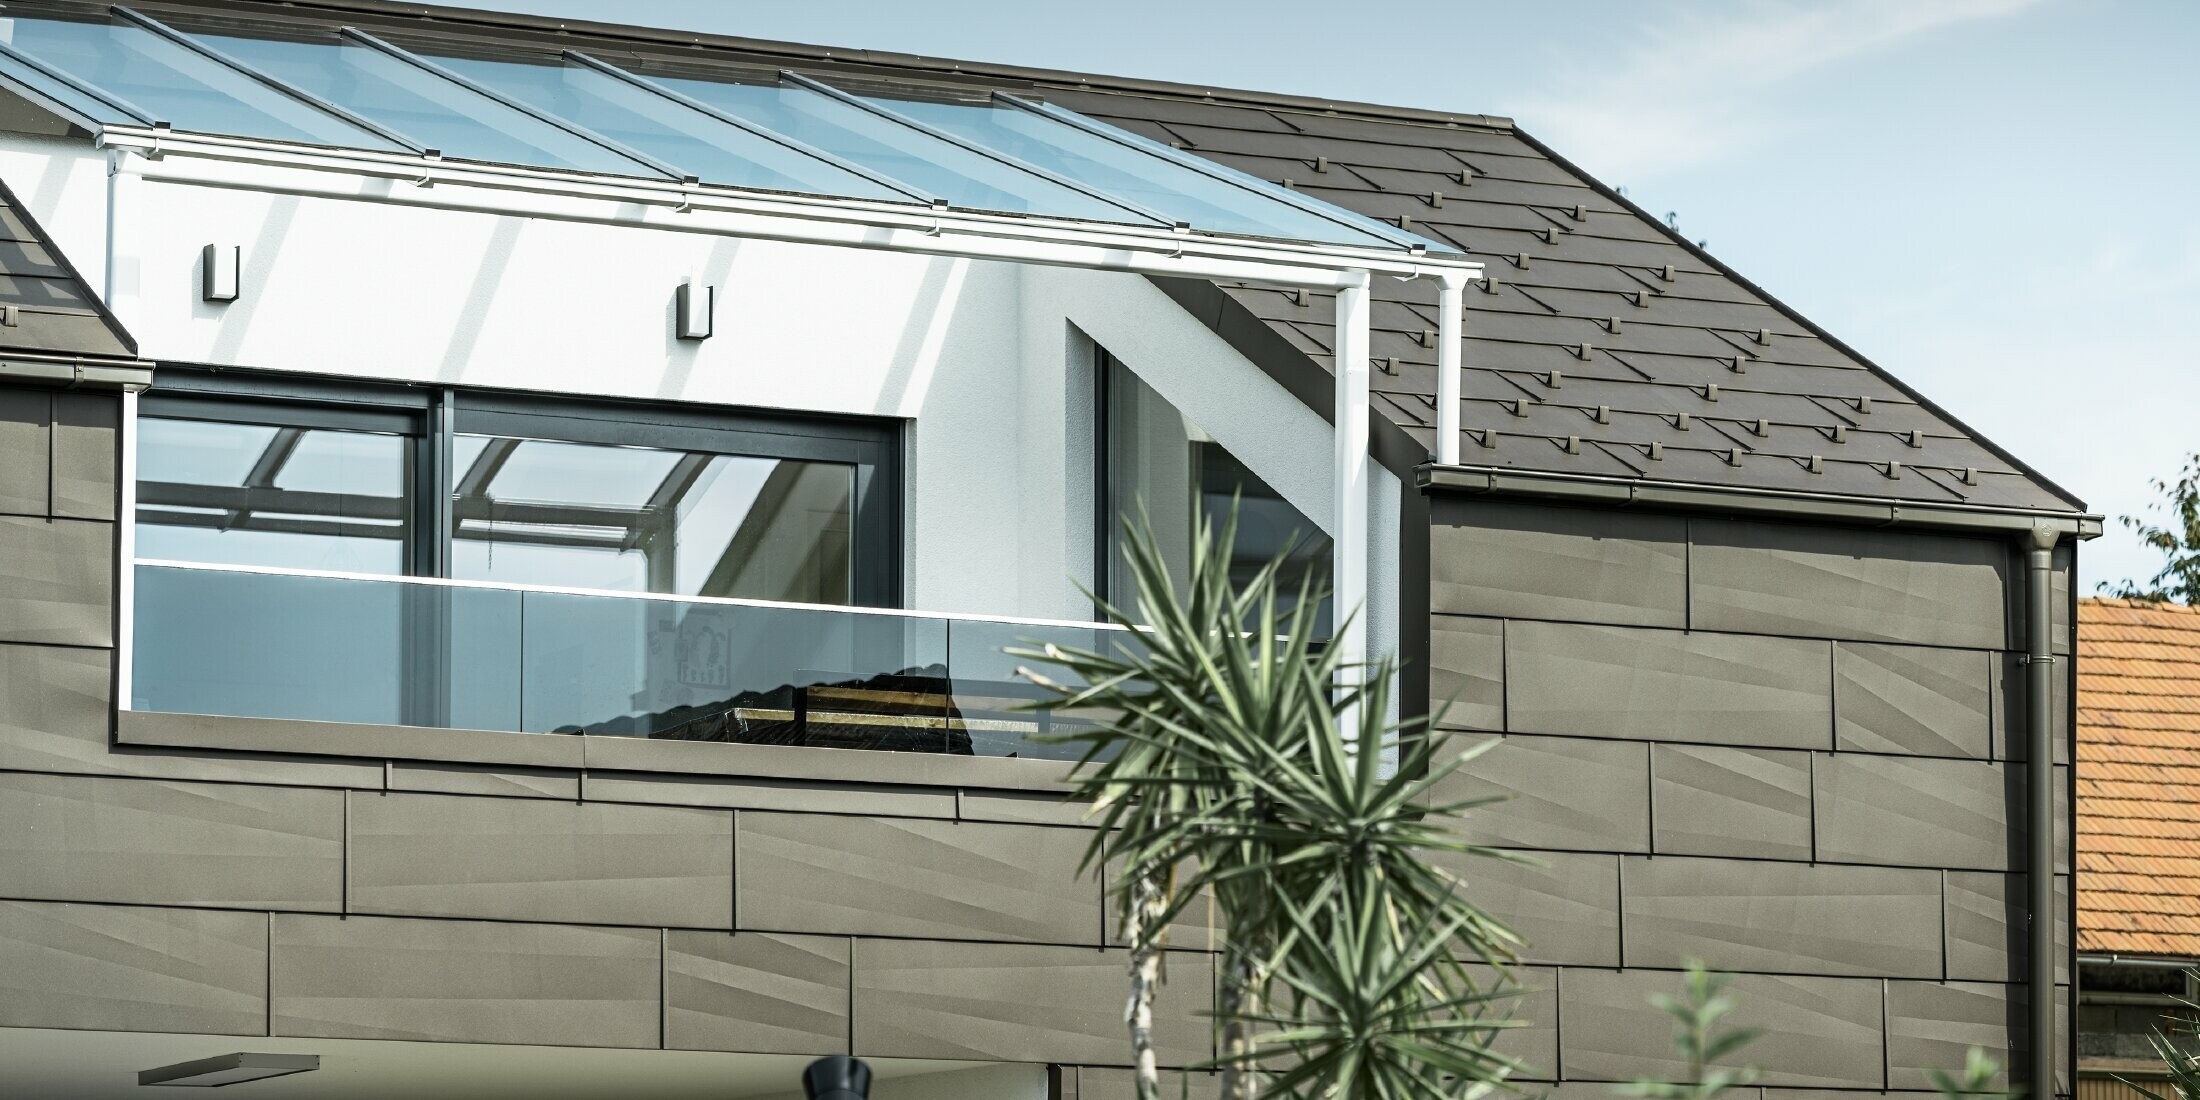 Tillbyggnad med takterrass täckt med PREFA komplett system. På tak och fasad användes PREFA tak- och fasadpanel FX.12. Dessutom används PREFA rektangulär ränna, PREFA stuprör och omfattande tillbehör i brunt för takavvattningen.